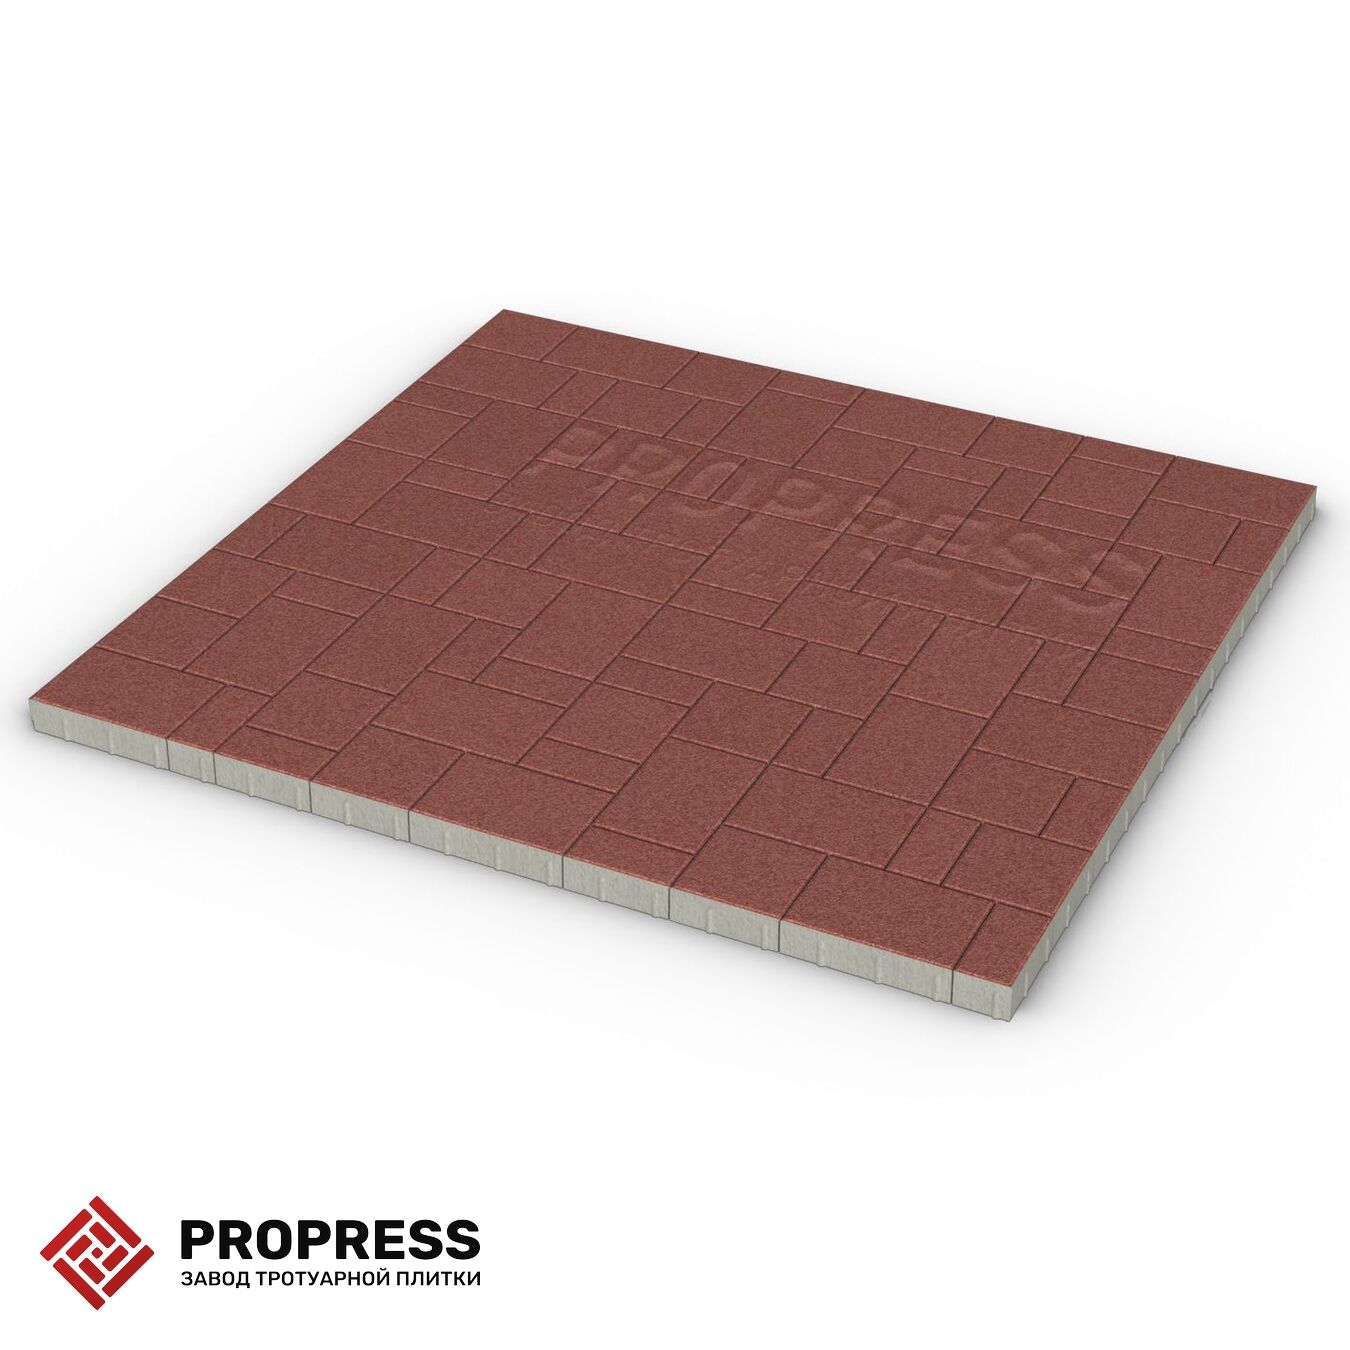 Тротуарная плитка Пропресс Лэндхаус Красный мрамор 60 мм